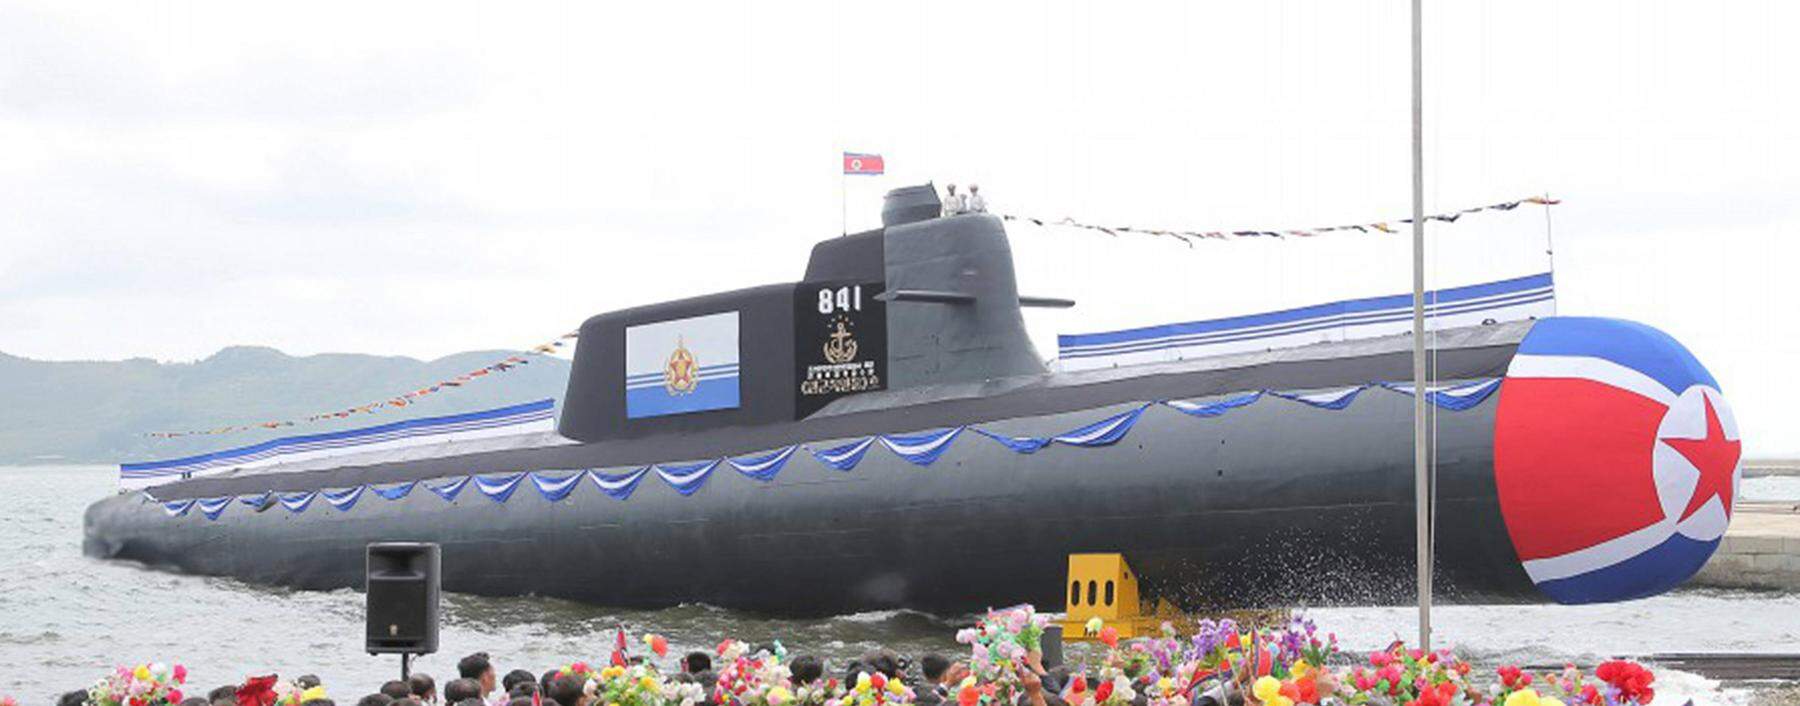 Stapellauf des angeblich atomar bewaffneten U-Boots Nr. 841 „Hero Kim Kun Ok“.